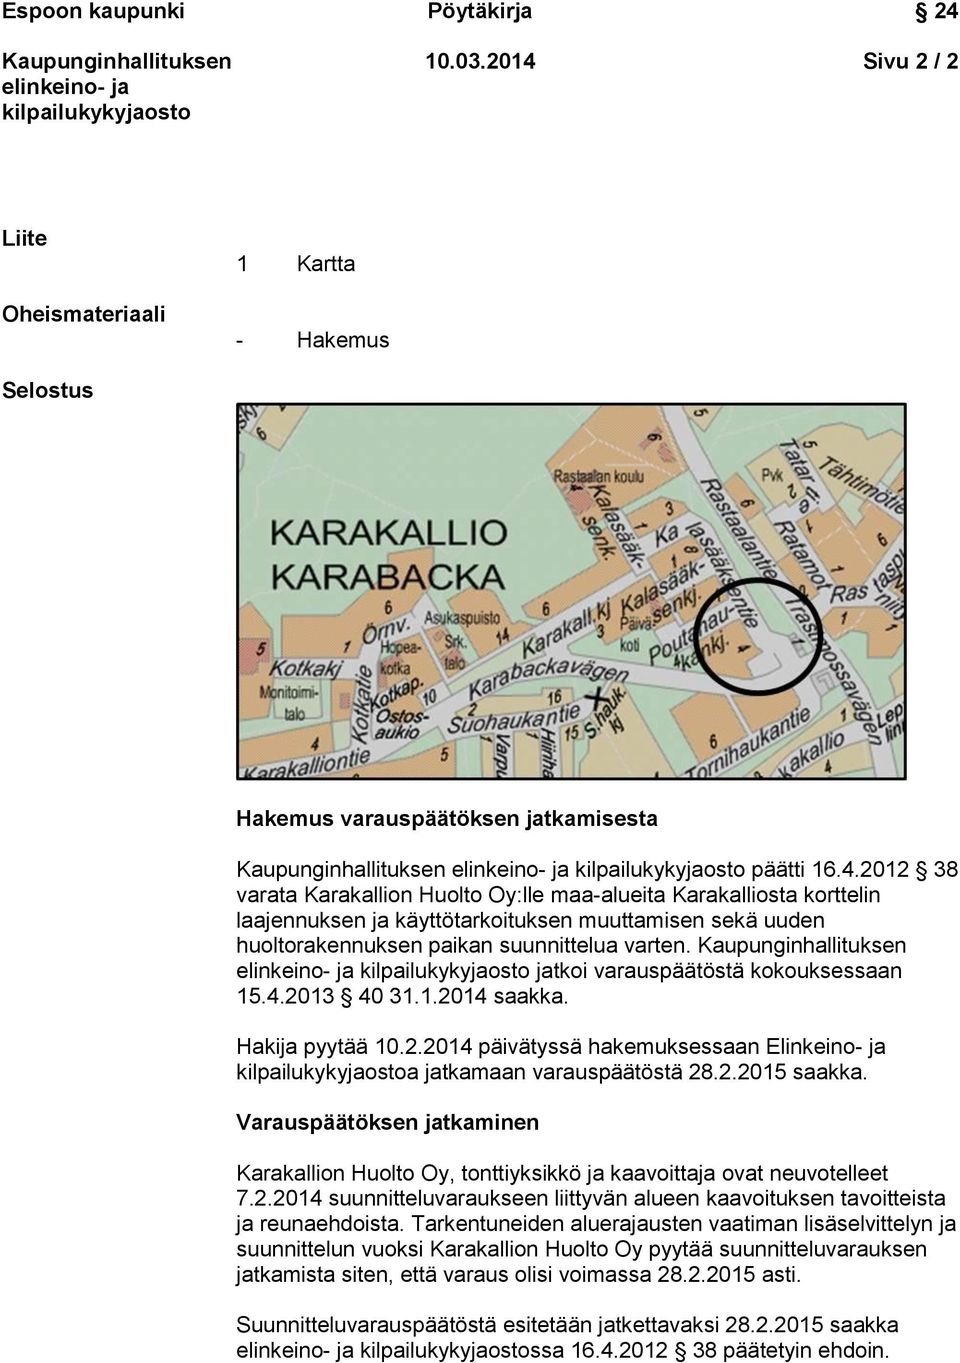 Varauspäätöksen jatkaminen Karakallion Huolto Oy, tonttiyksikkö ja kaavoittaja ovat neuvotelleet 7.2.2014 suunnitteluvaraukseen liittyvän alueen kaavoituksen tavoitteista ja reunaehdoista.